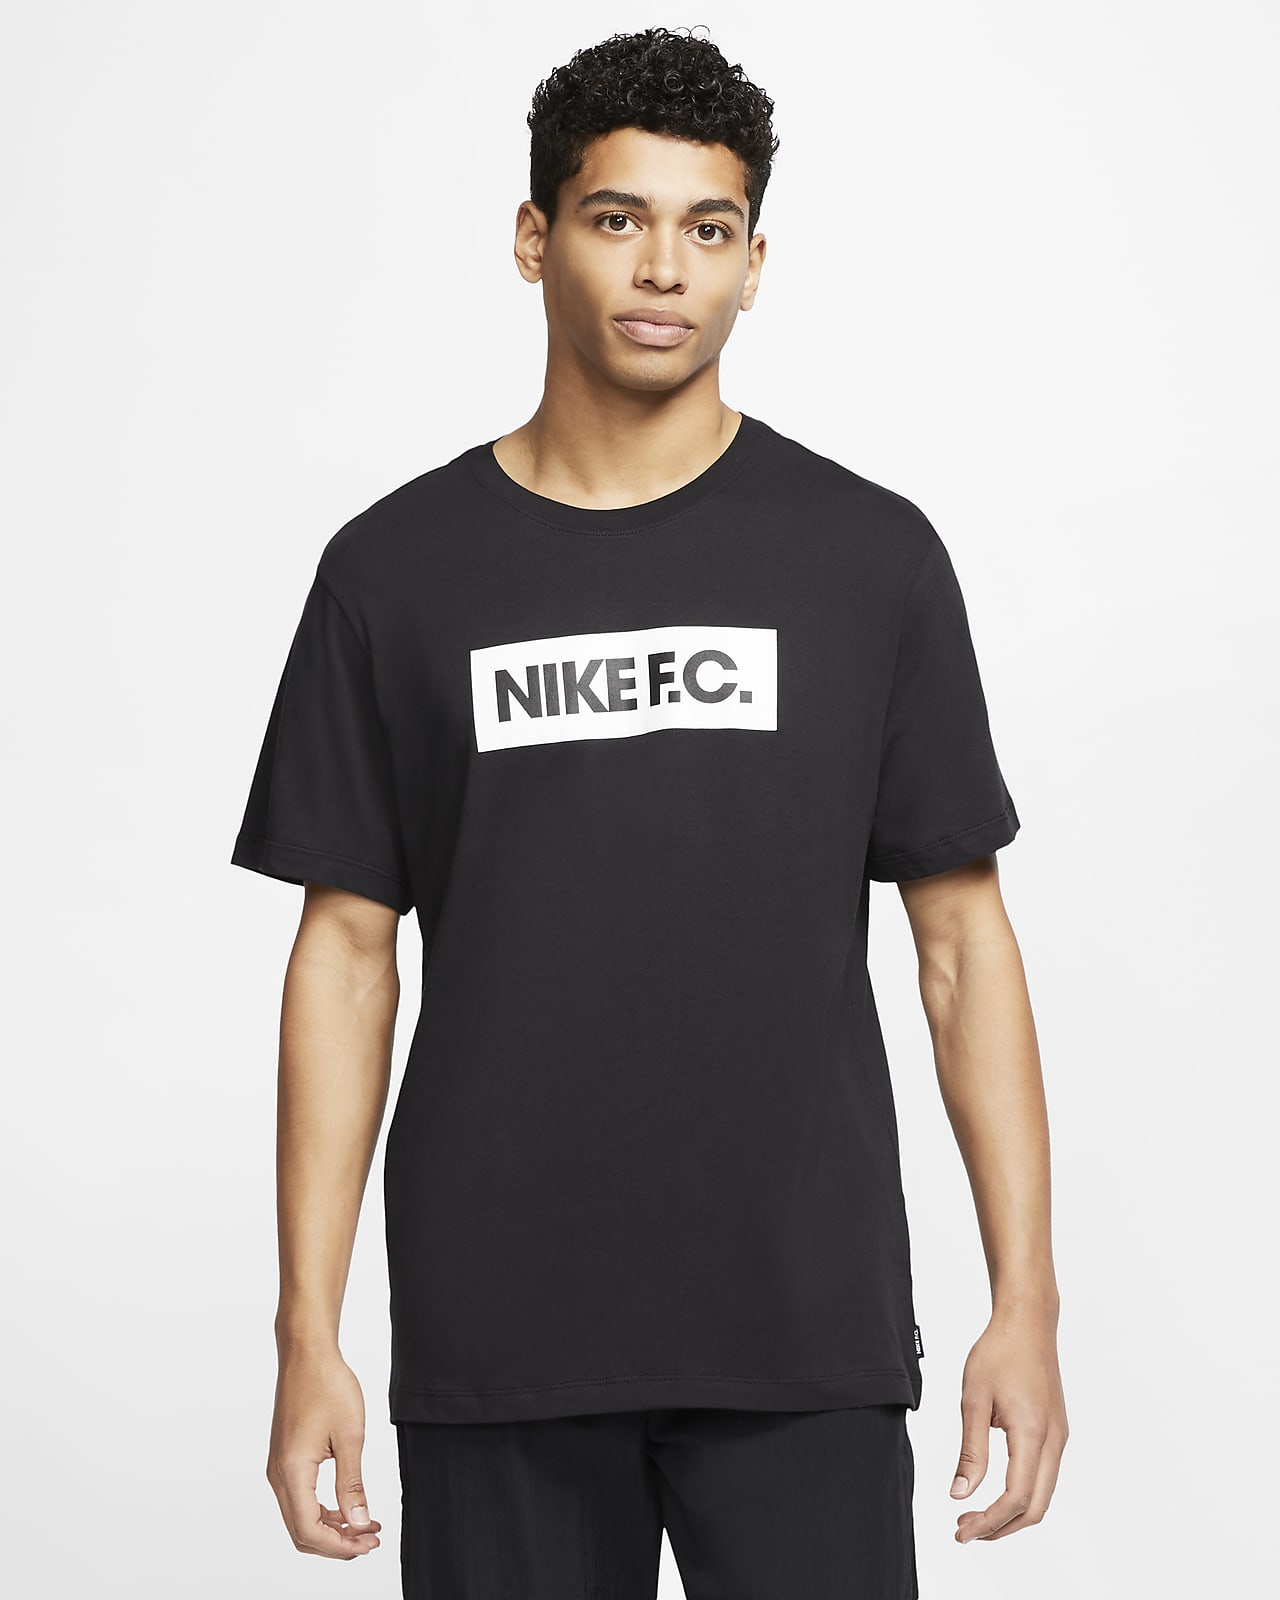 Biblioteca troncal Responder segundo Nike F.C. SE11 Camiseta de fútbol - Hombre. Nike ES